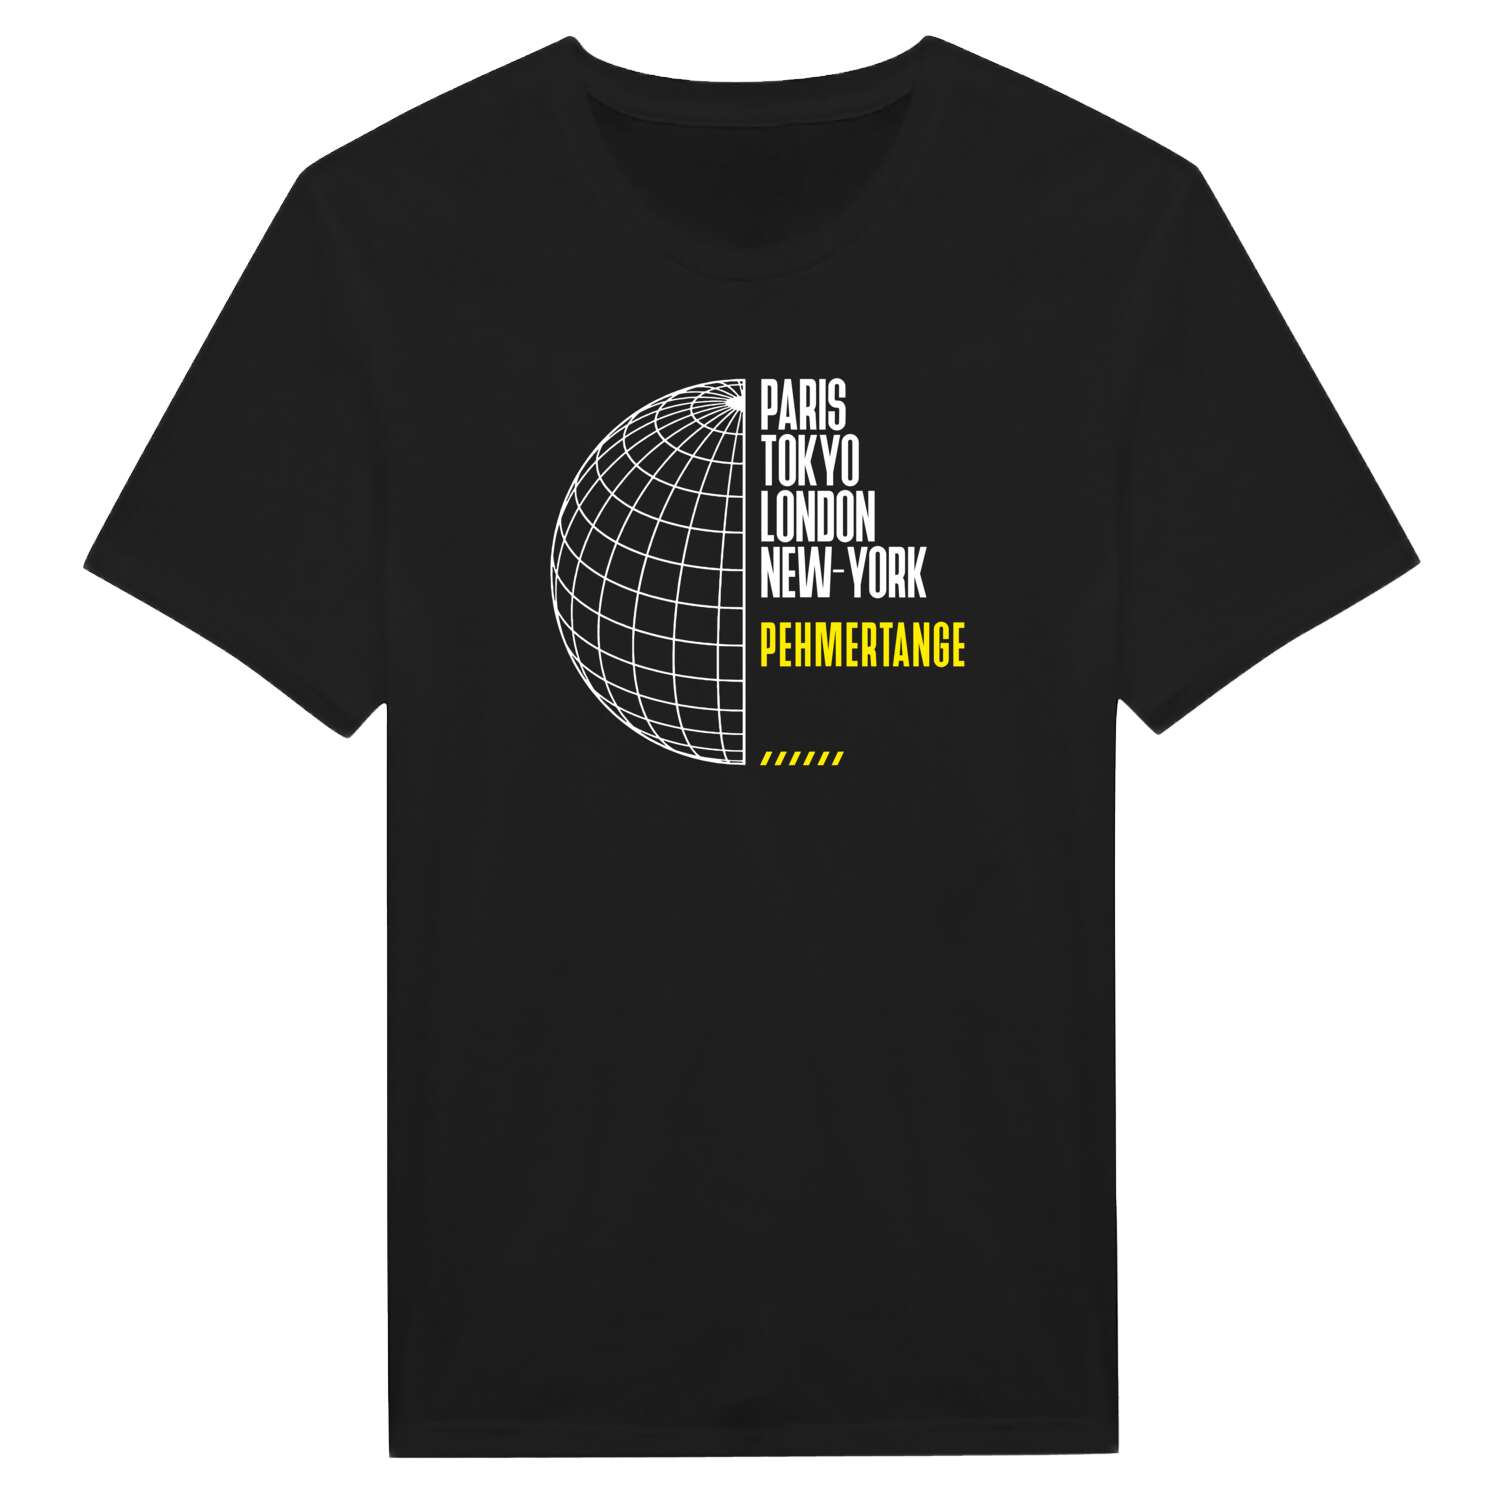 Pehmertange T-Shirt »Paris Tokyo London«